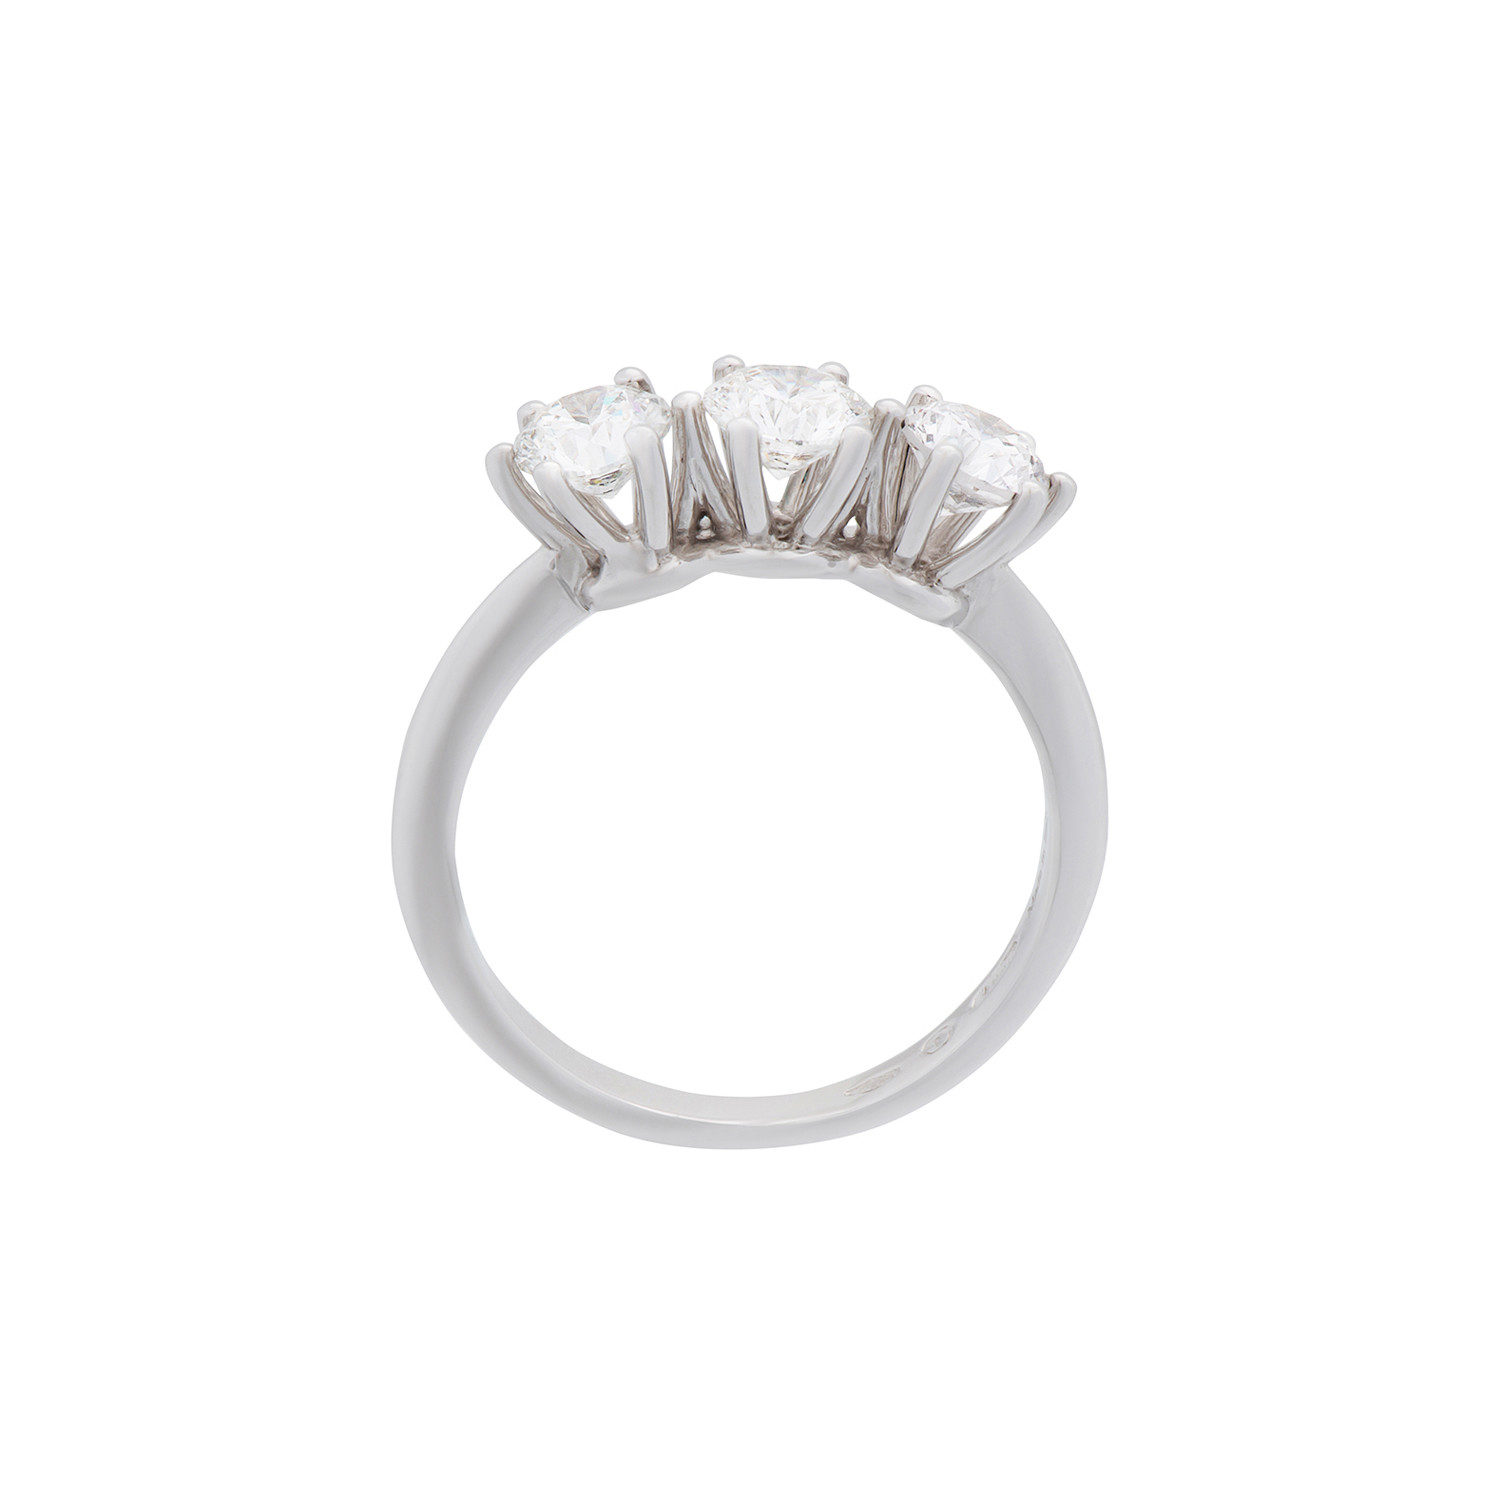 Damiani Luce 18k White Gold 3 Diamond Ring // Ring Size: 6.5 - Damiani